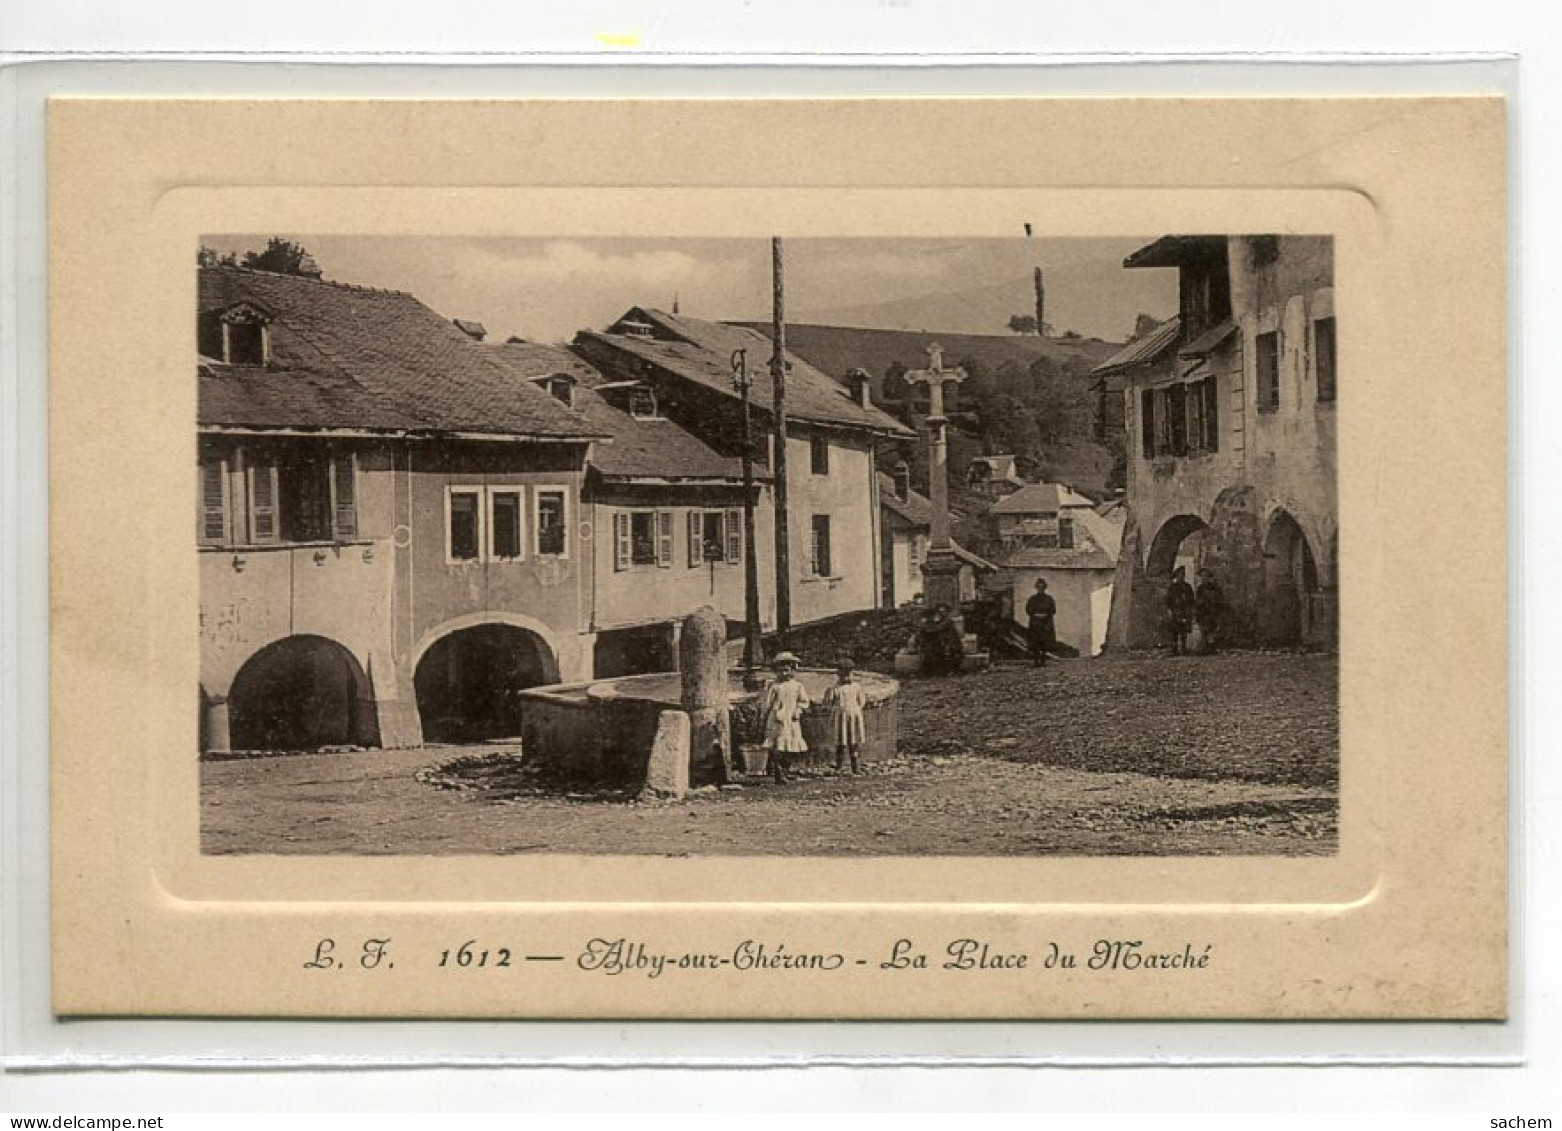 74 ALBY Sur CHERAN Place Du Marché Fillette Fontaine Villageois Croix  1910 Edit L F 1612   D11 2022  - Alby-sur-Cheran